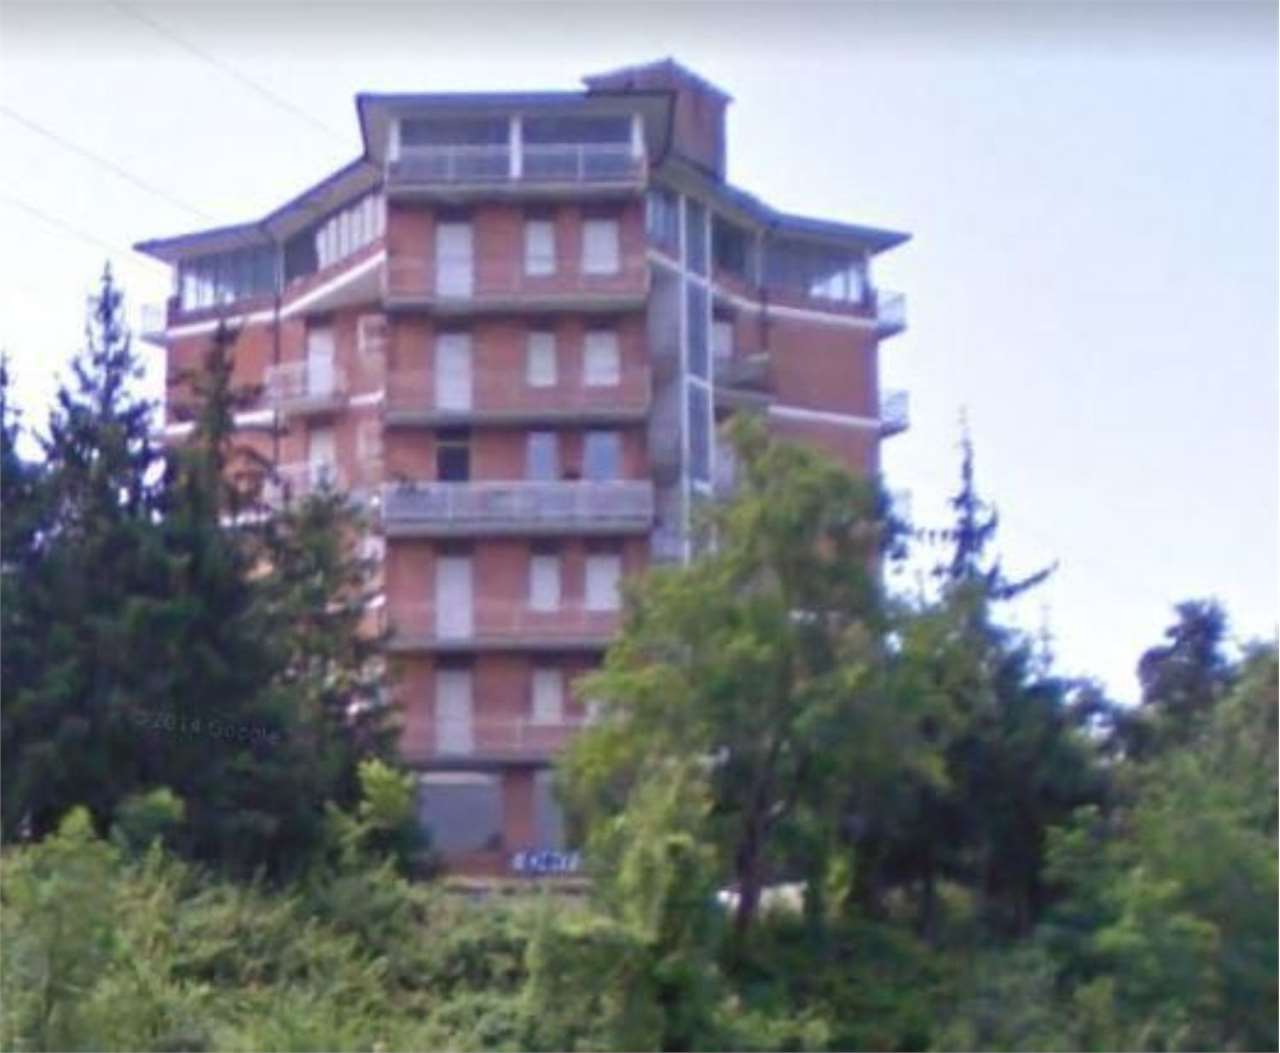 Appartamento in vendita a Bobbio, 3 locali, prezzo € 13.000 | PortaleAgenzieImmobiliari.it